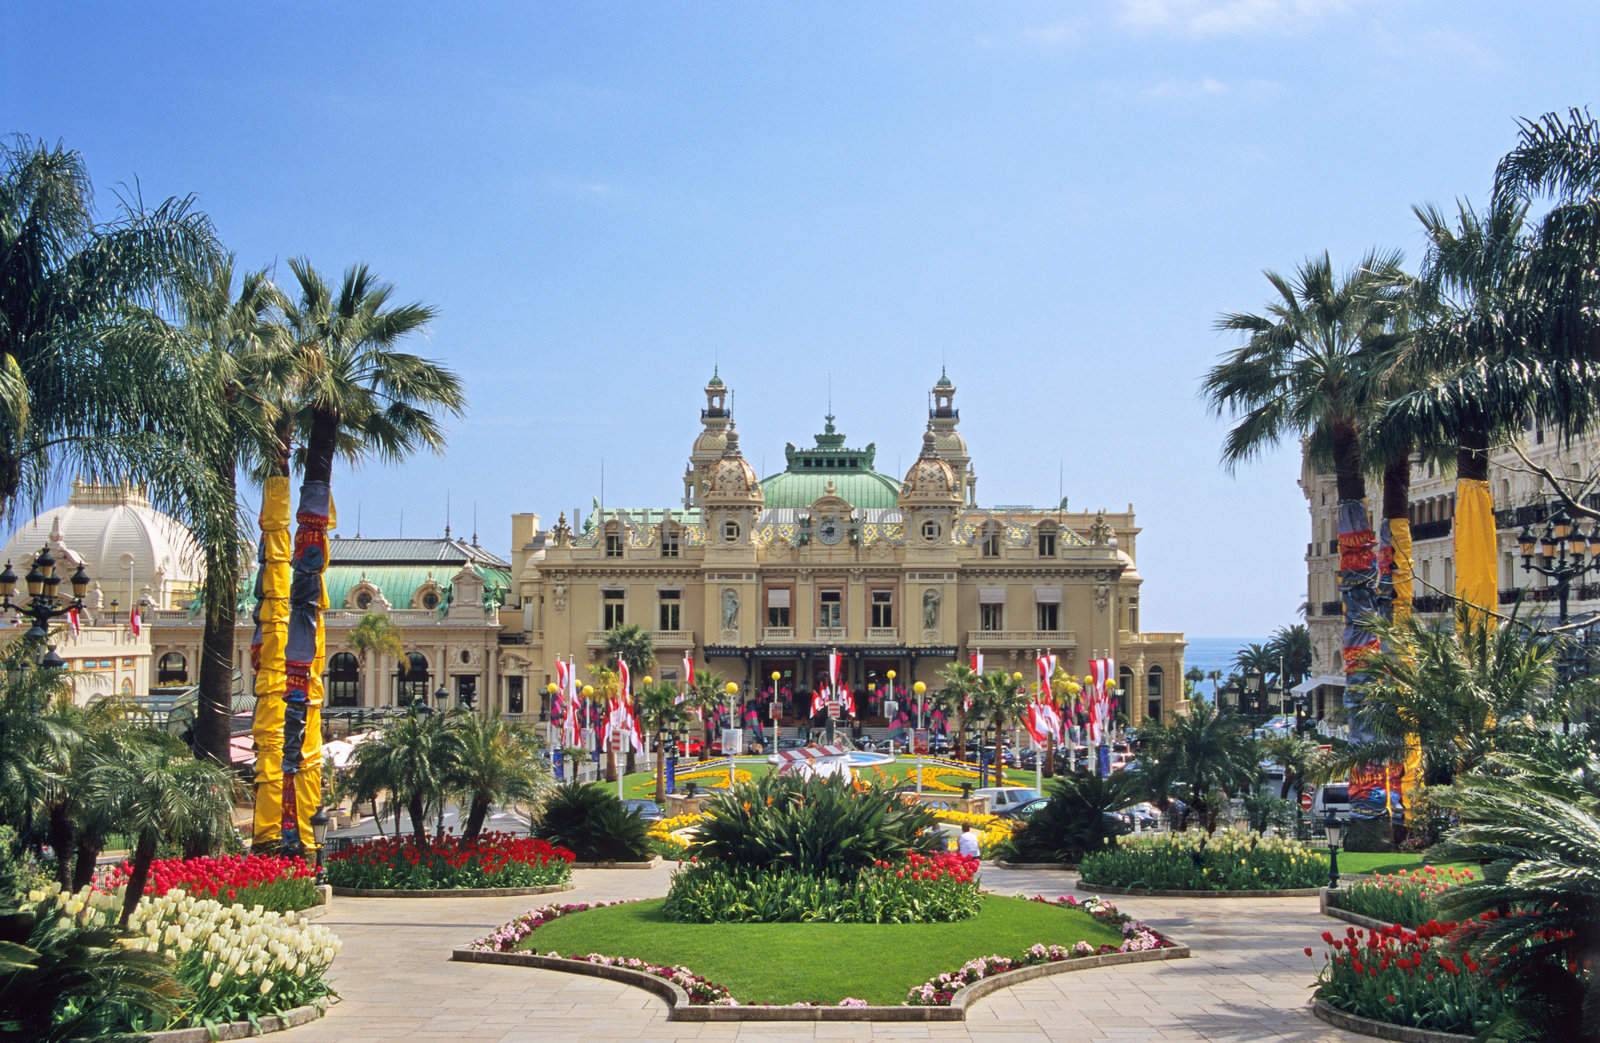 Monte Carlo Casino by ACMPhoto